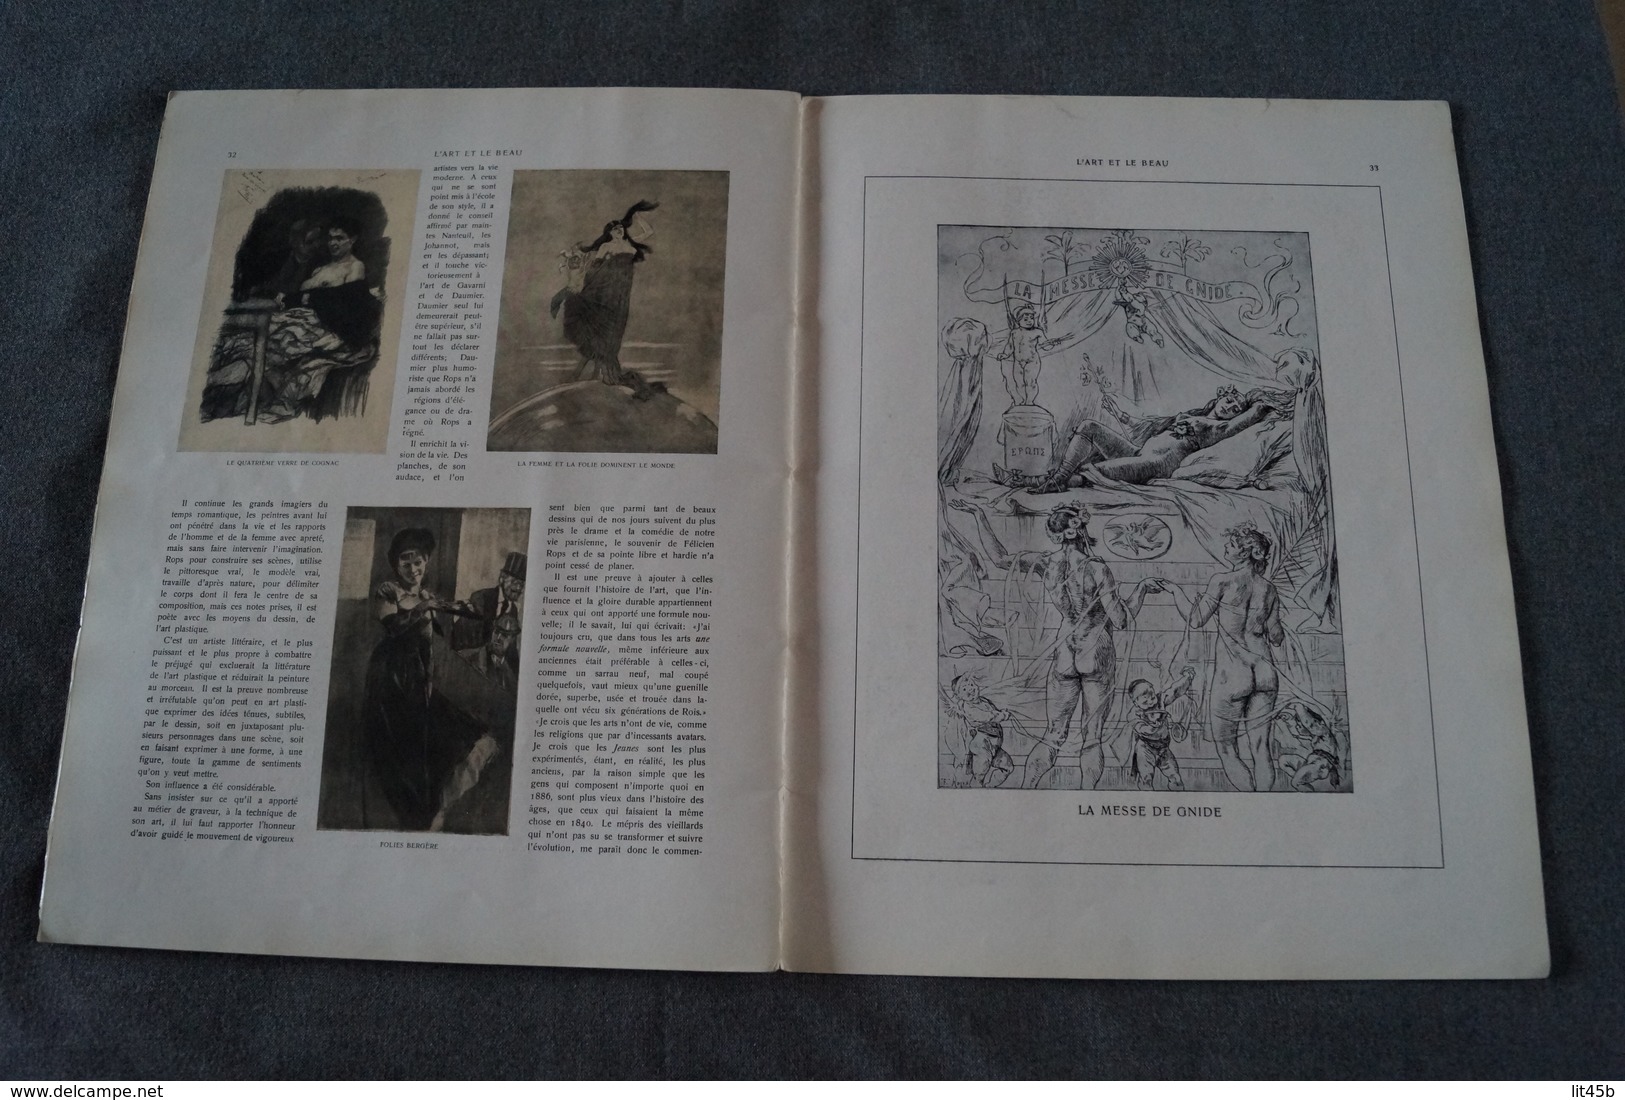 Félicien Rops et son oeuvre,texte Gustave Kamn,EX LIBRIS Georges Jean Hendrick (Géo)